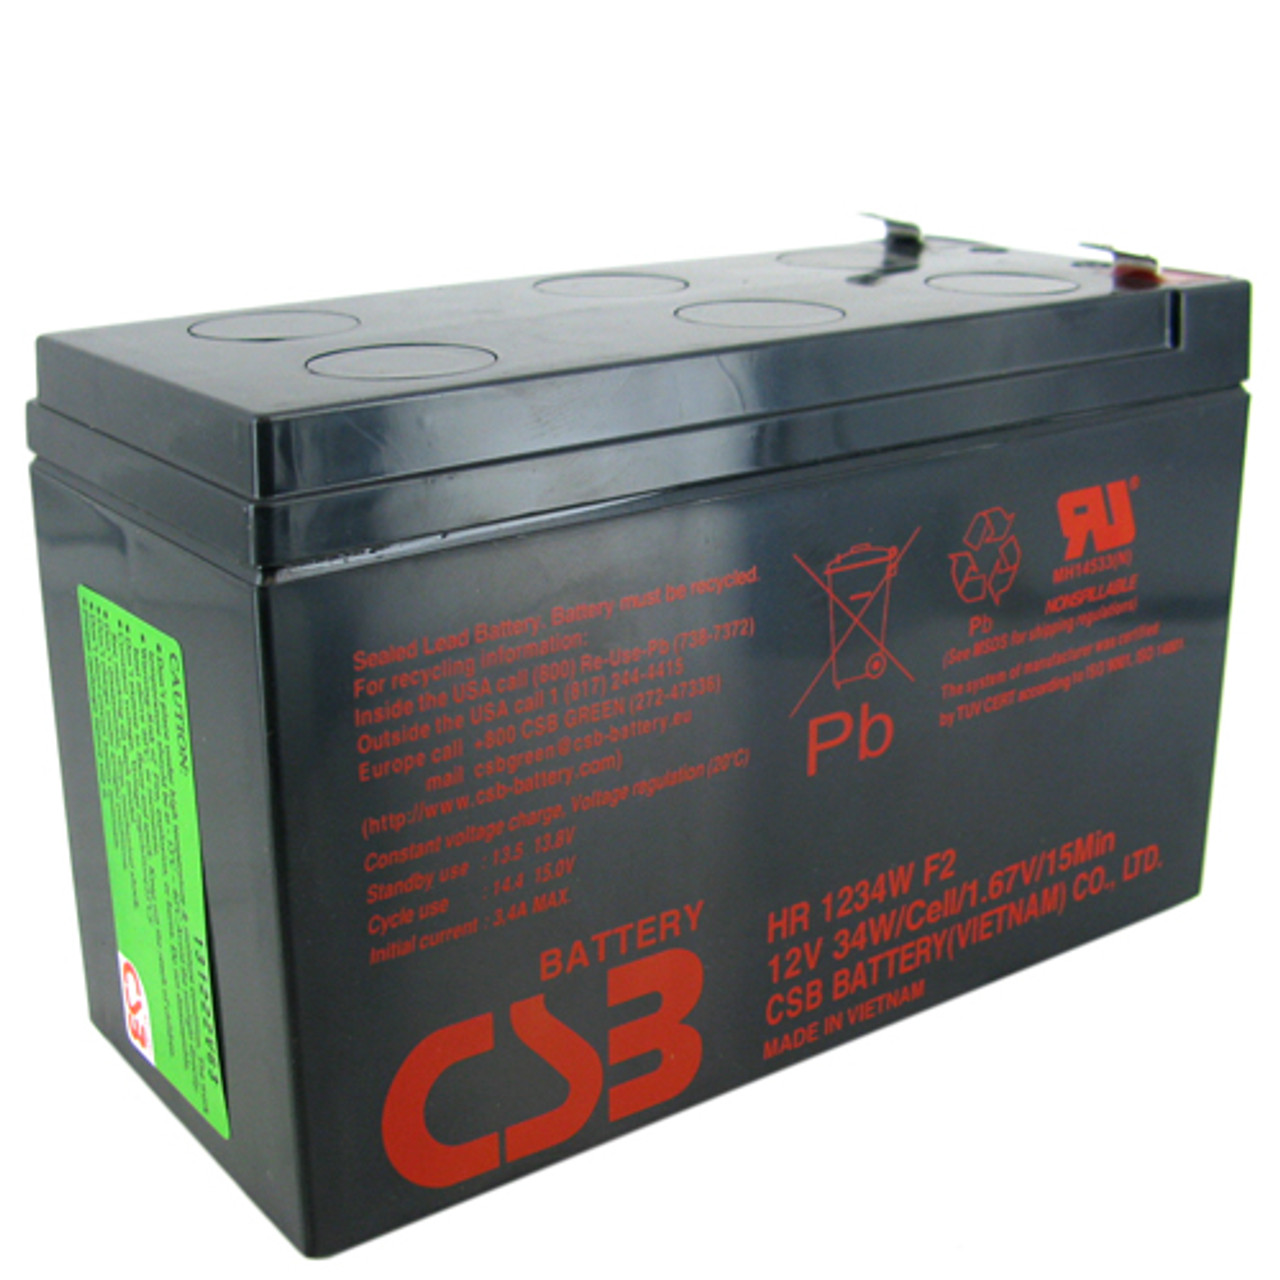 CSB HR 1234w f2. Батарея CSB HR 1234w f2. Аккумулятор CSB hr1234w f2 (12v,9ah) для ups.